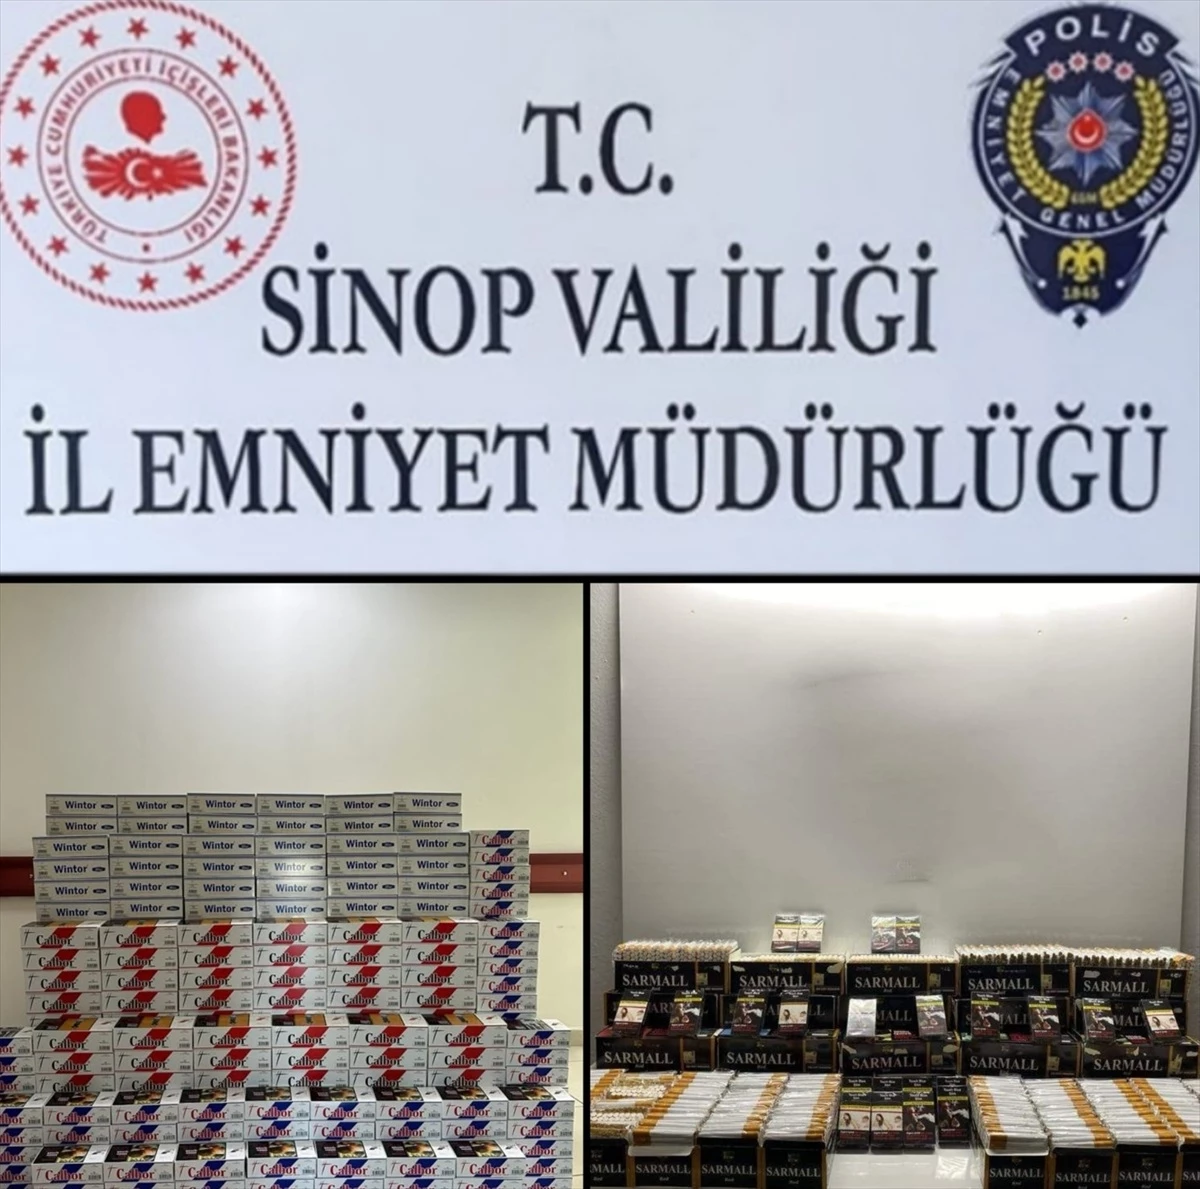 Sinop'ta 60 Bin 460 Makaron Ele Geçirildi, 3 Şüpheli Gözaltına Alındı